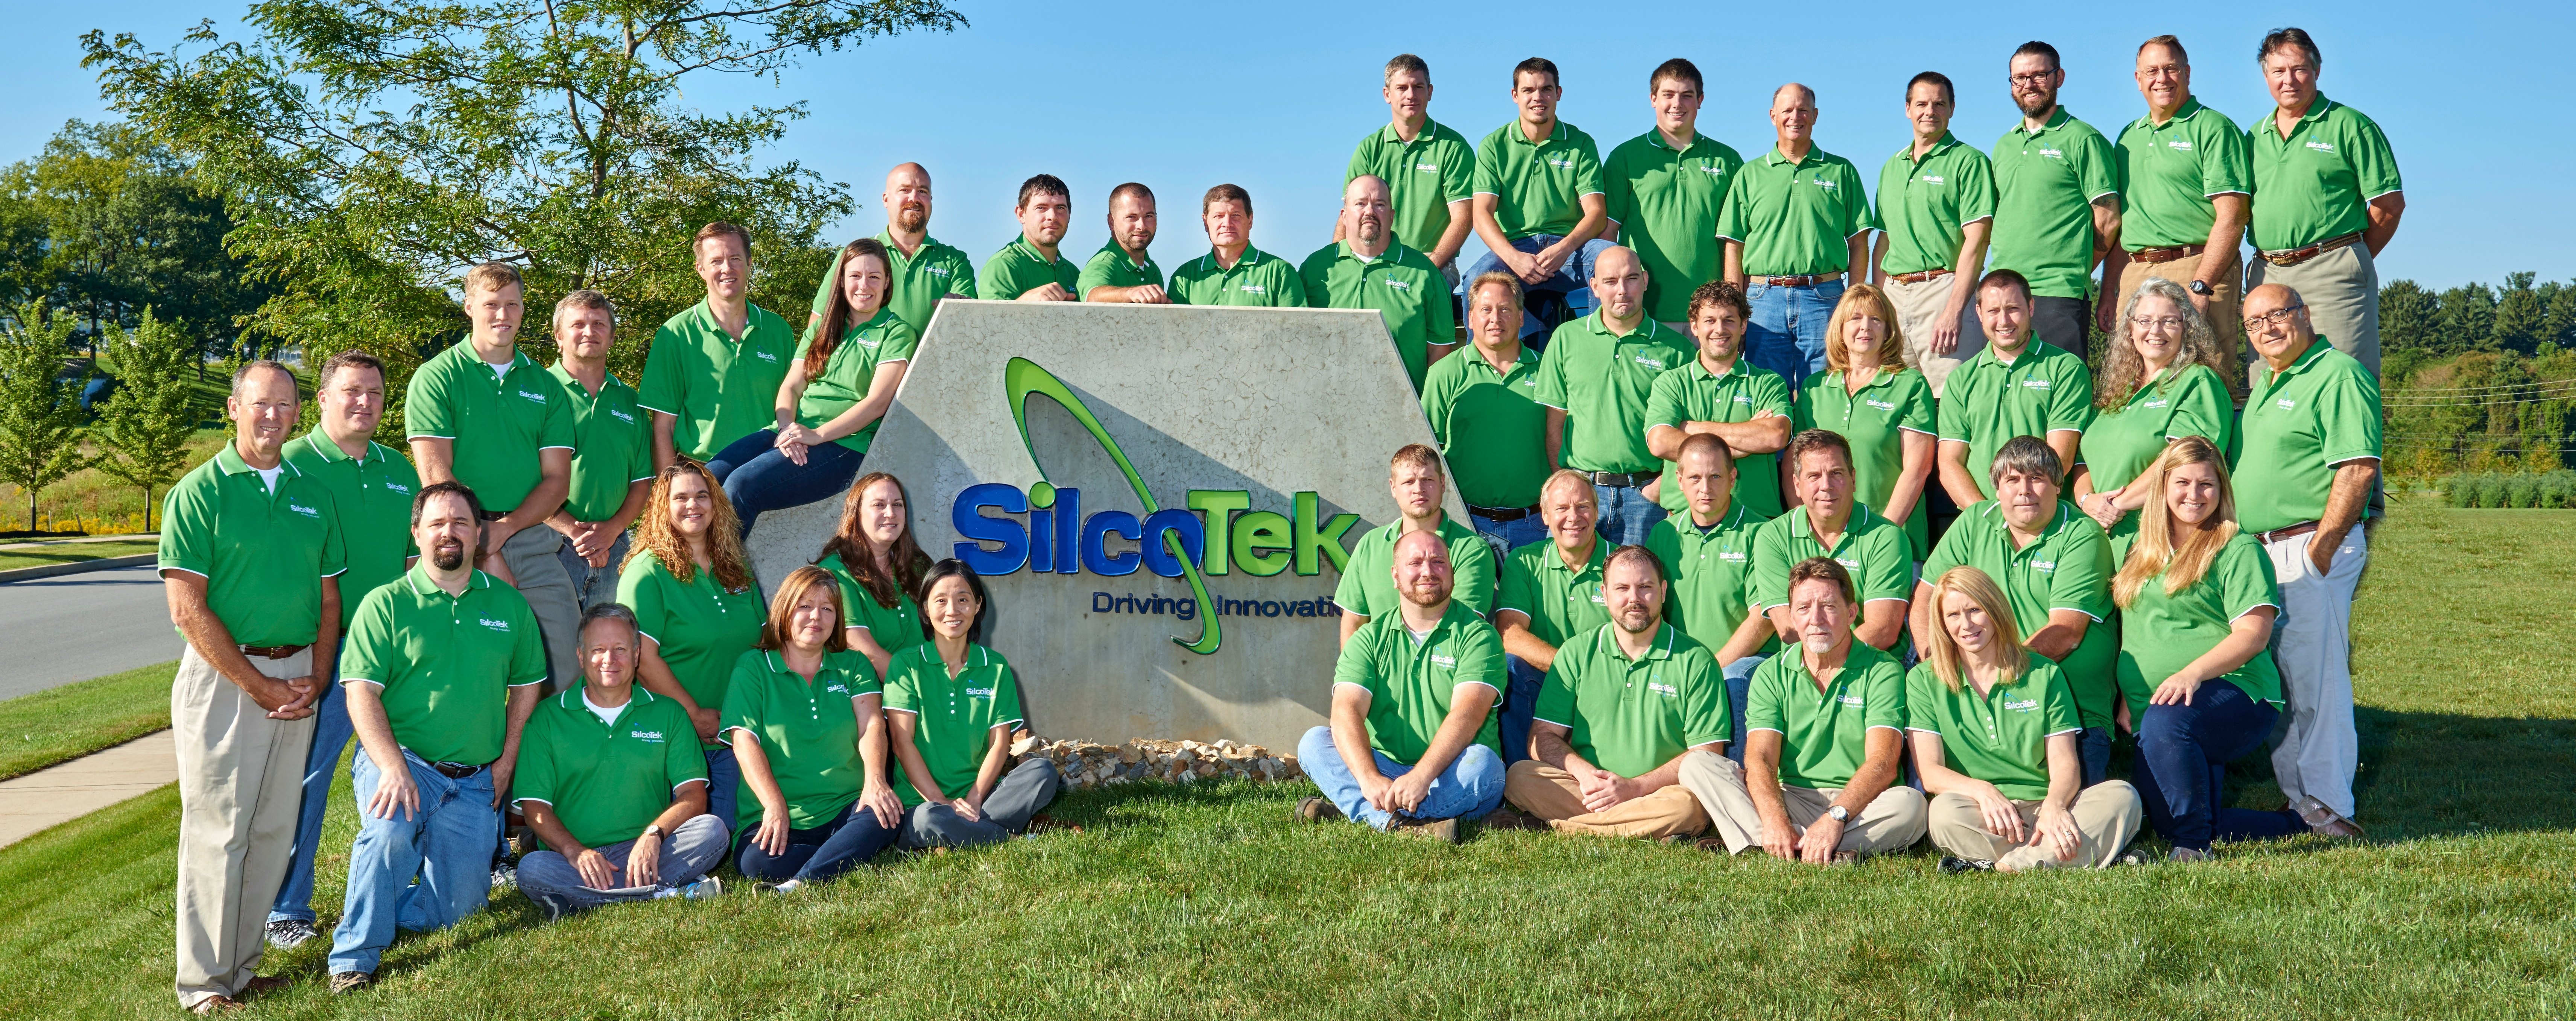 The SilcoTek team in 2015